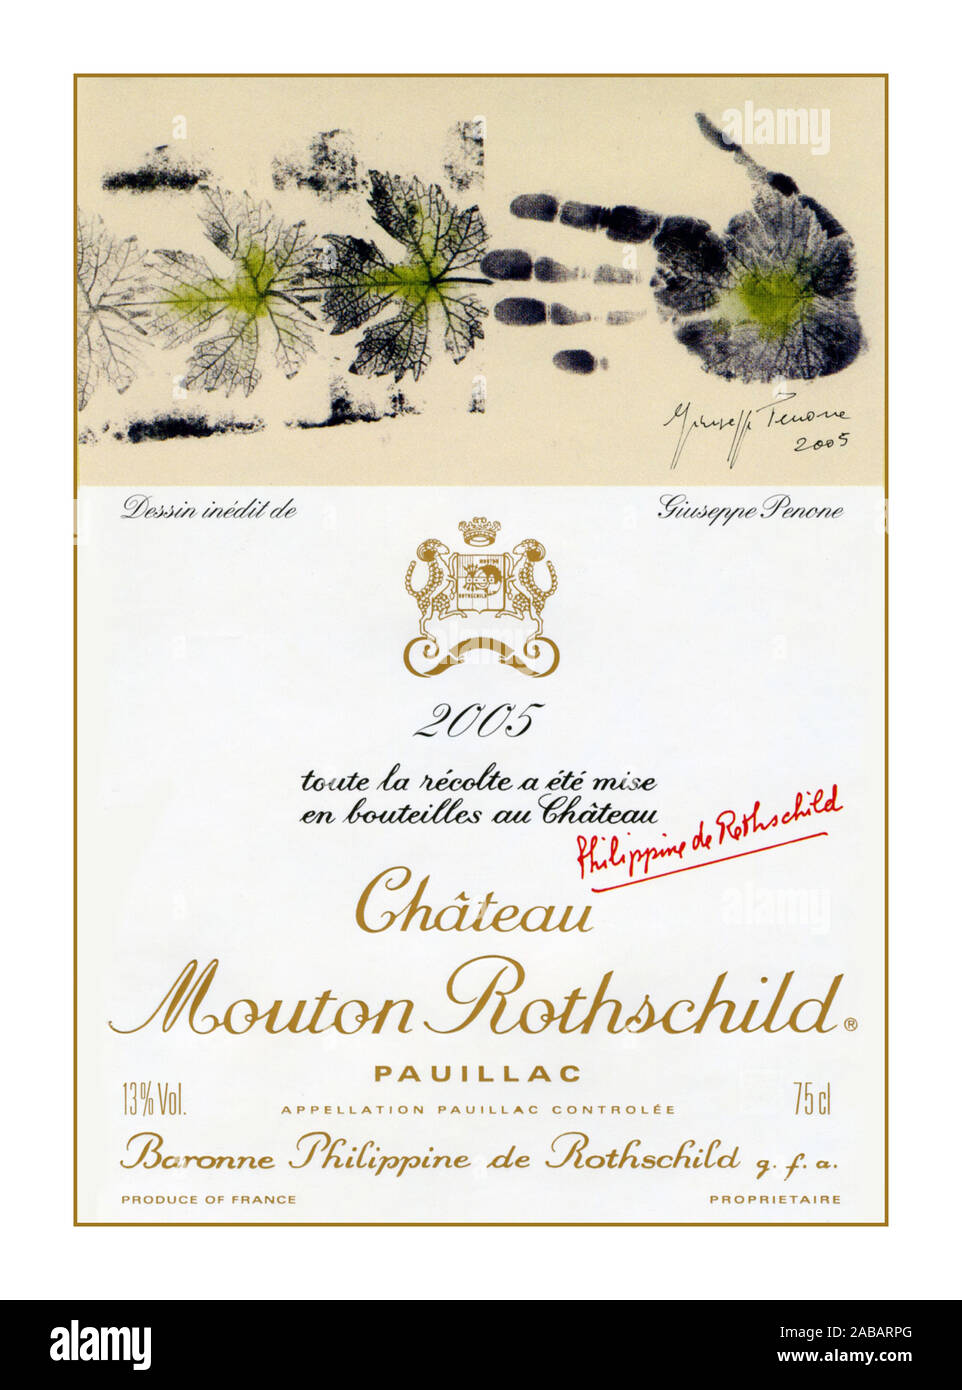 PAUILLAC annata 2005 Vino etichetta del flacone per uno dei più grandi vini di Bordeaux Château Mouton Rothschild 2005 Pauillac rosso vino di Bordeaux Foto Stock